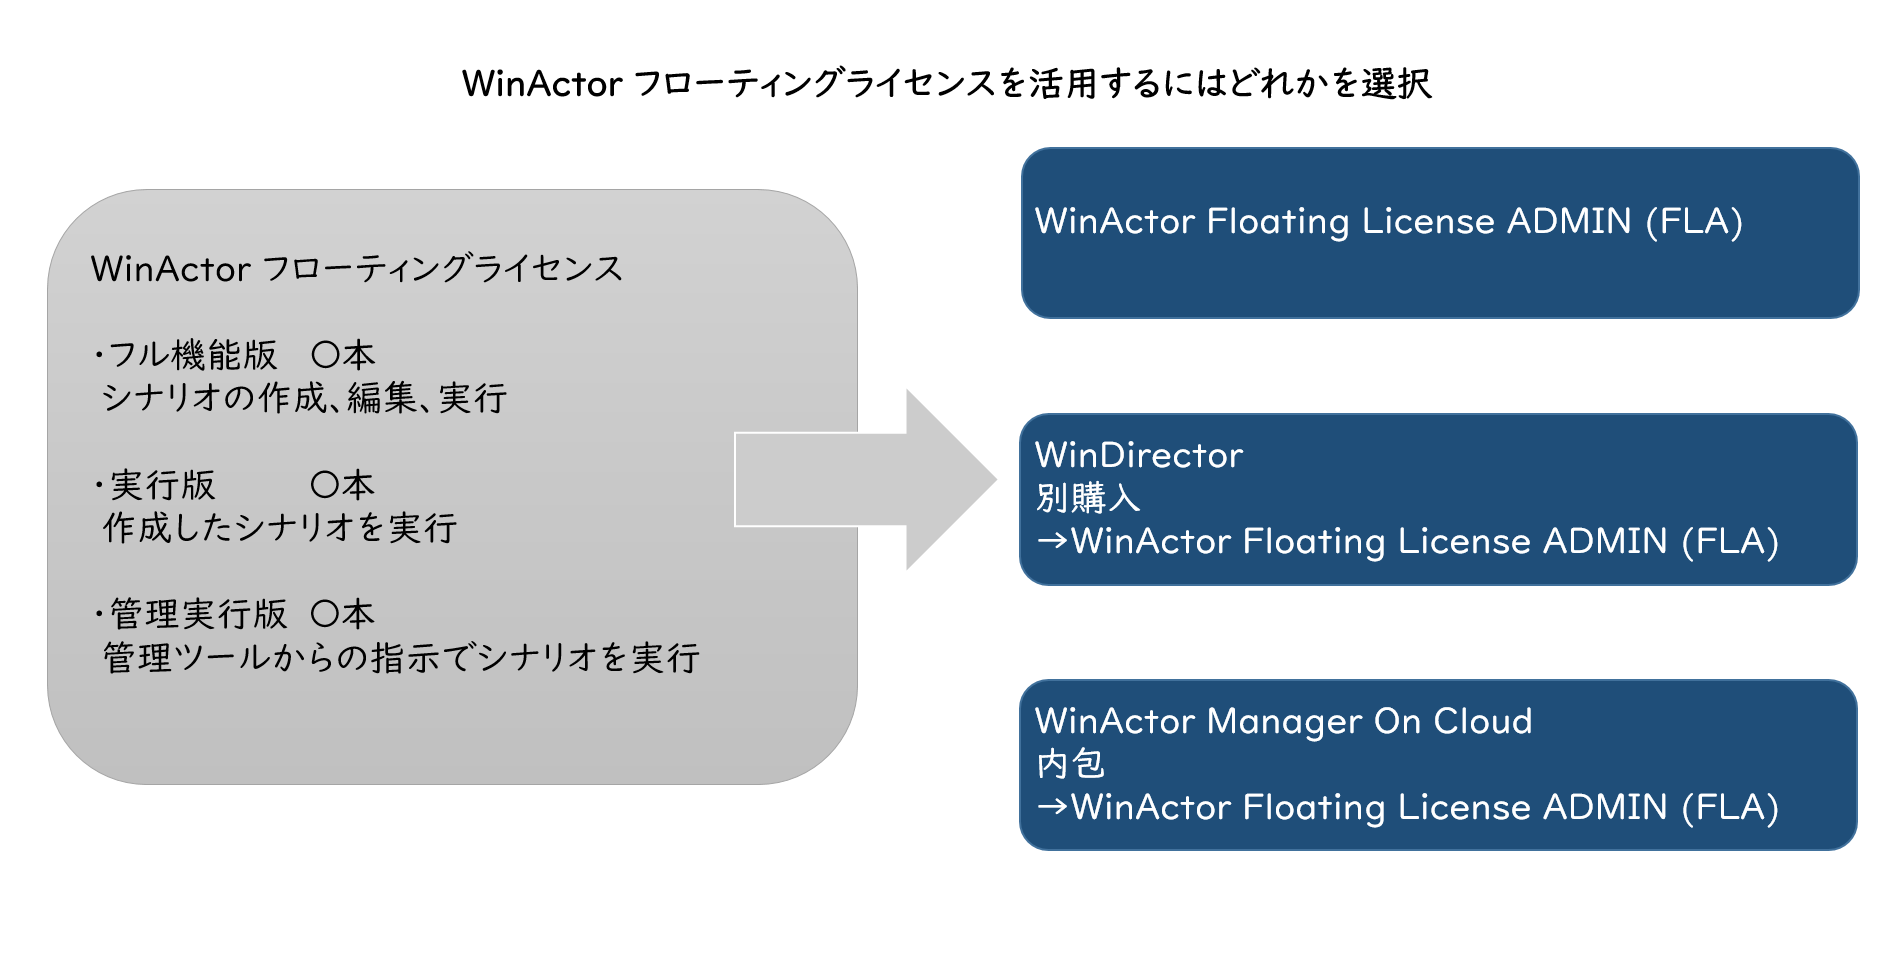 WiActorフローティングライセンスを活用するにはどれかを選択の画像